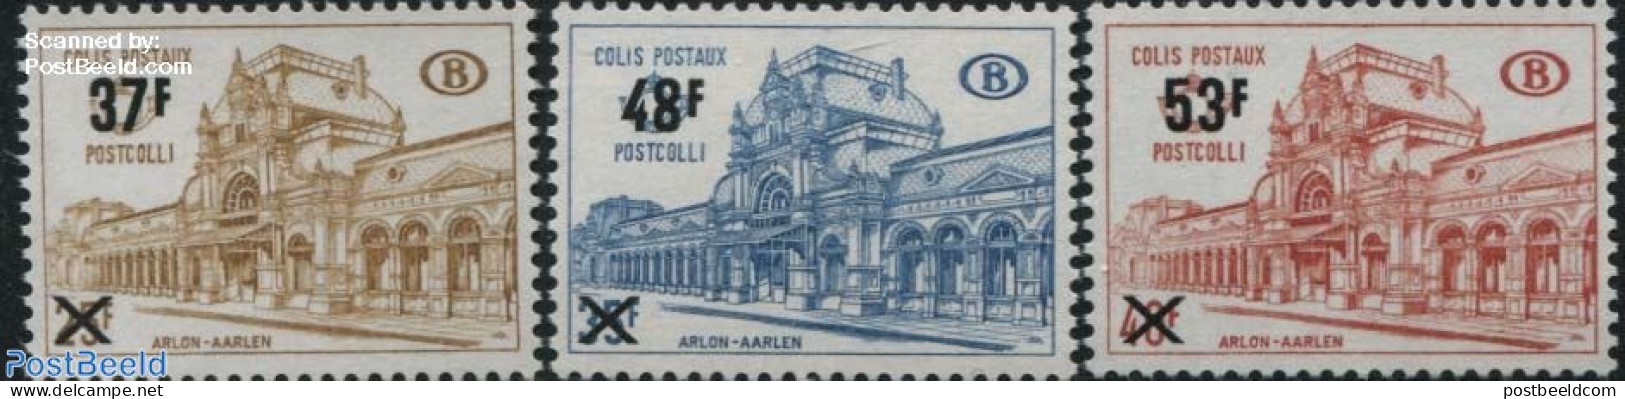 Belgium 1970 Railway Parcel Stamps 3v, Mint NH, Transport - Railways - Ungebraucht